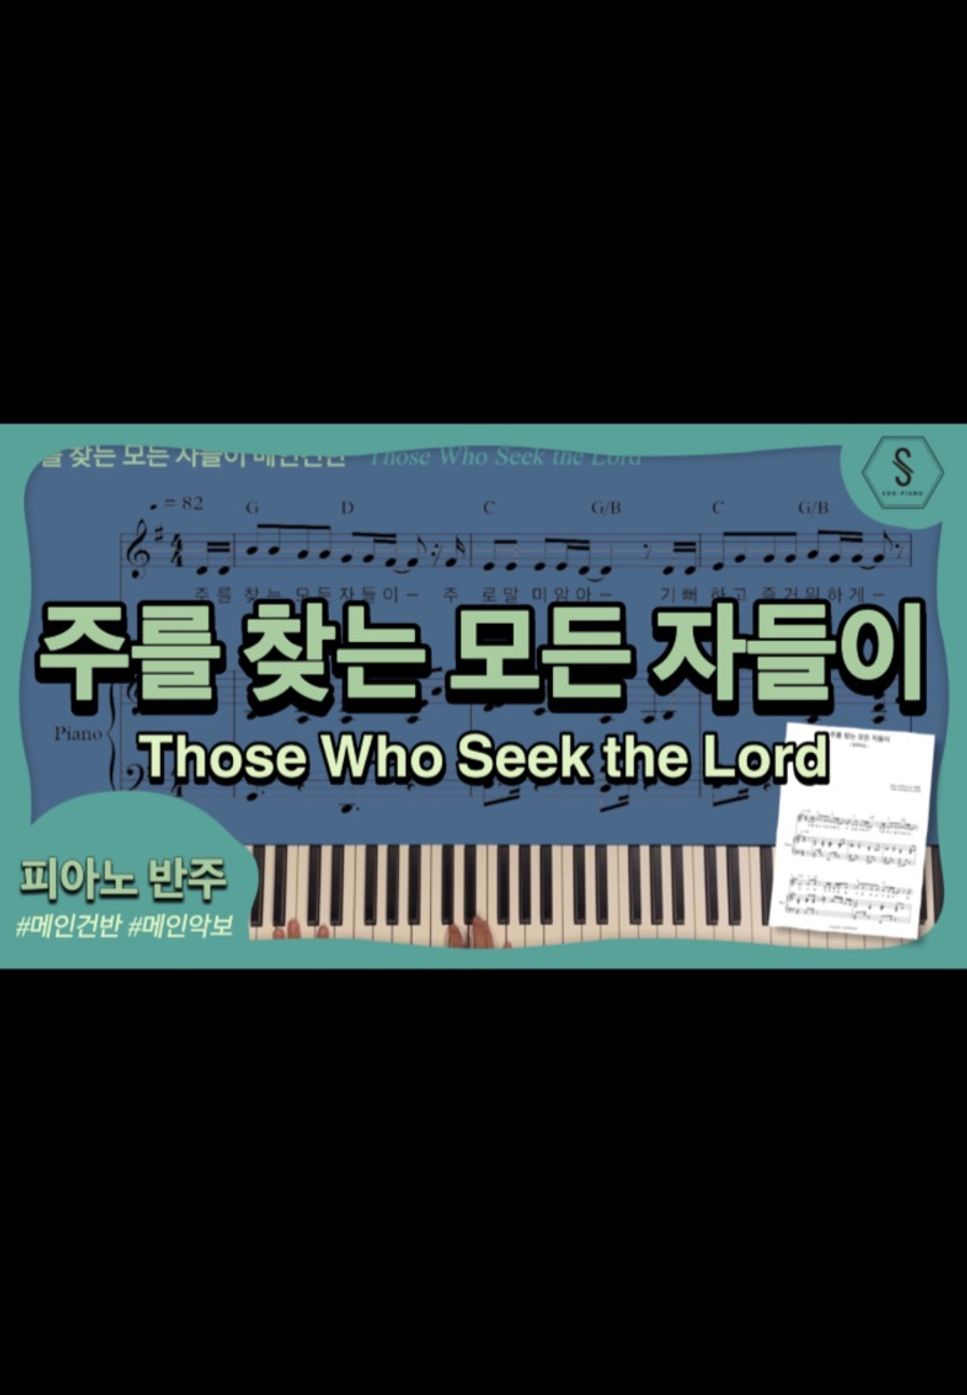 이준행 - Those Who Seek the Lord (piano ver) by SOOPIANO